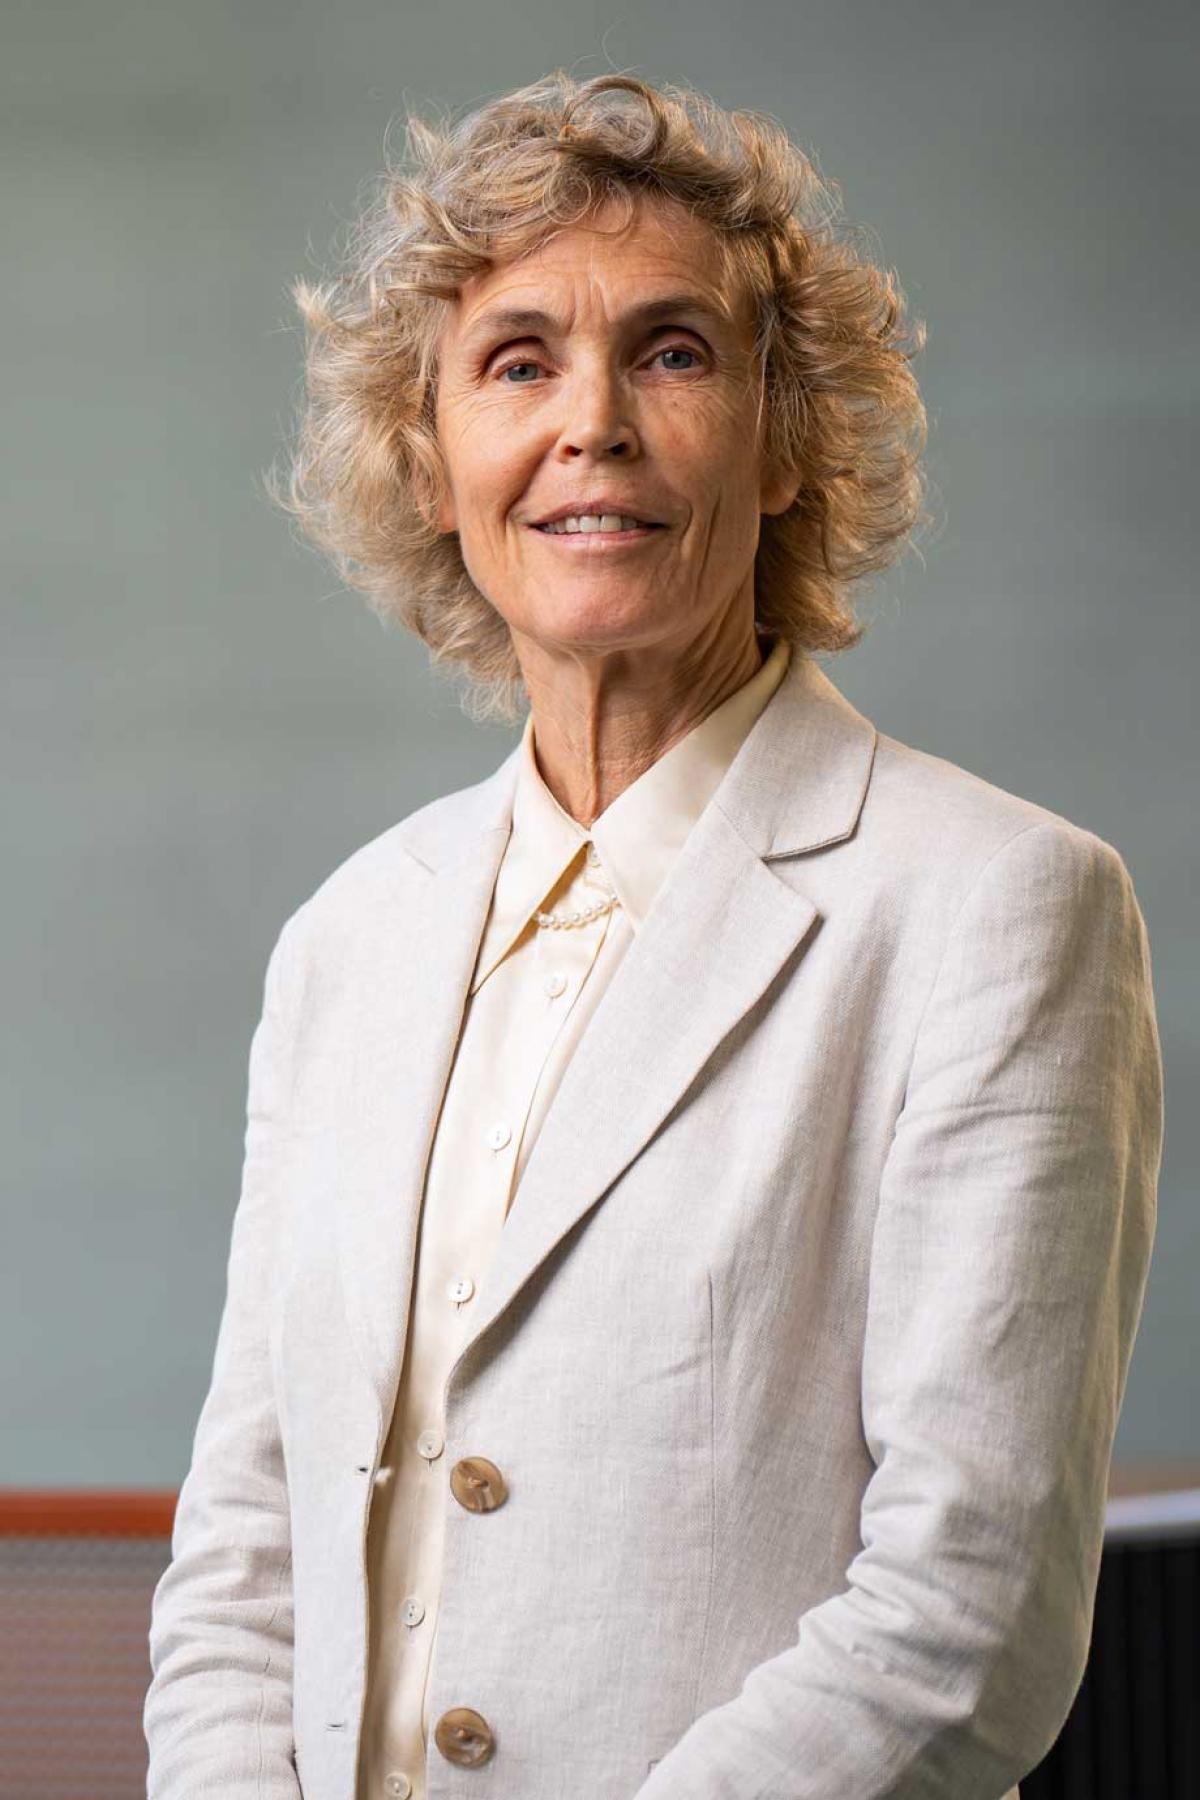 Professor Jane Burry